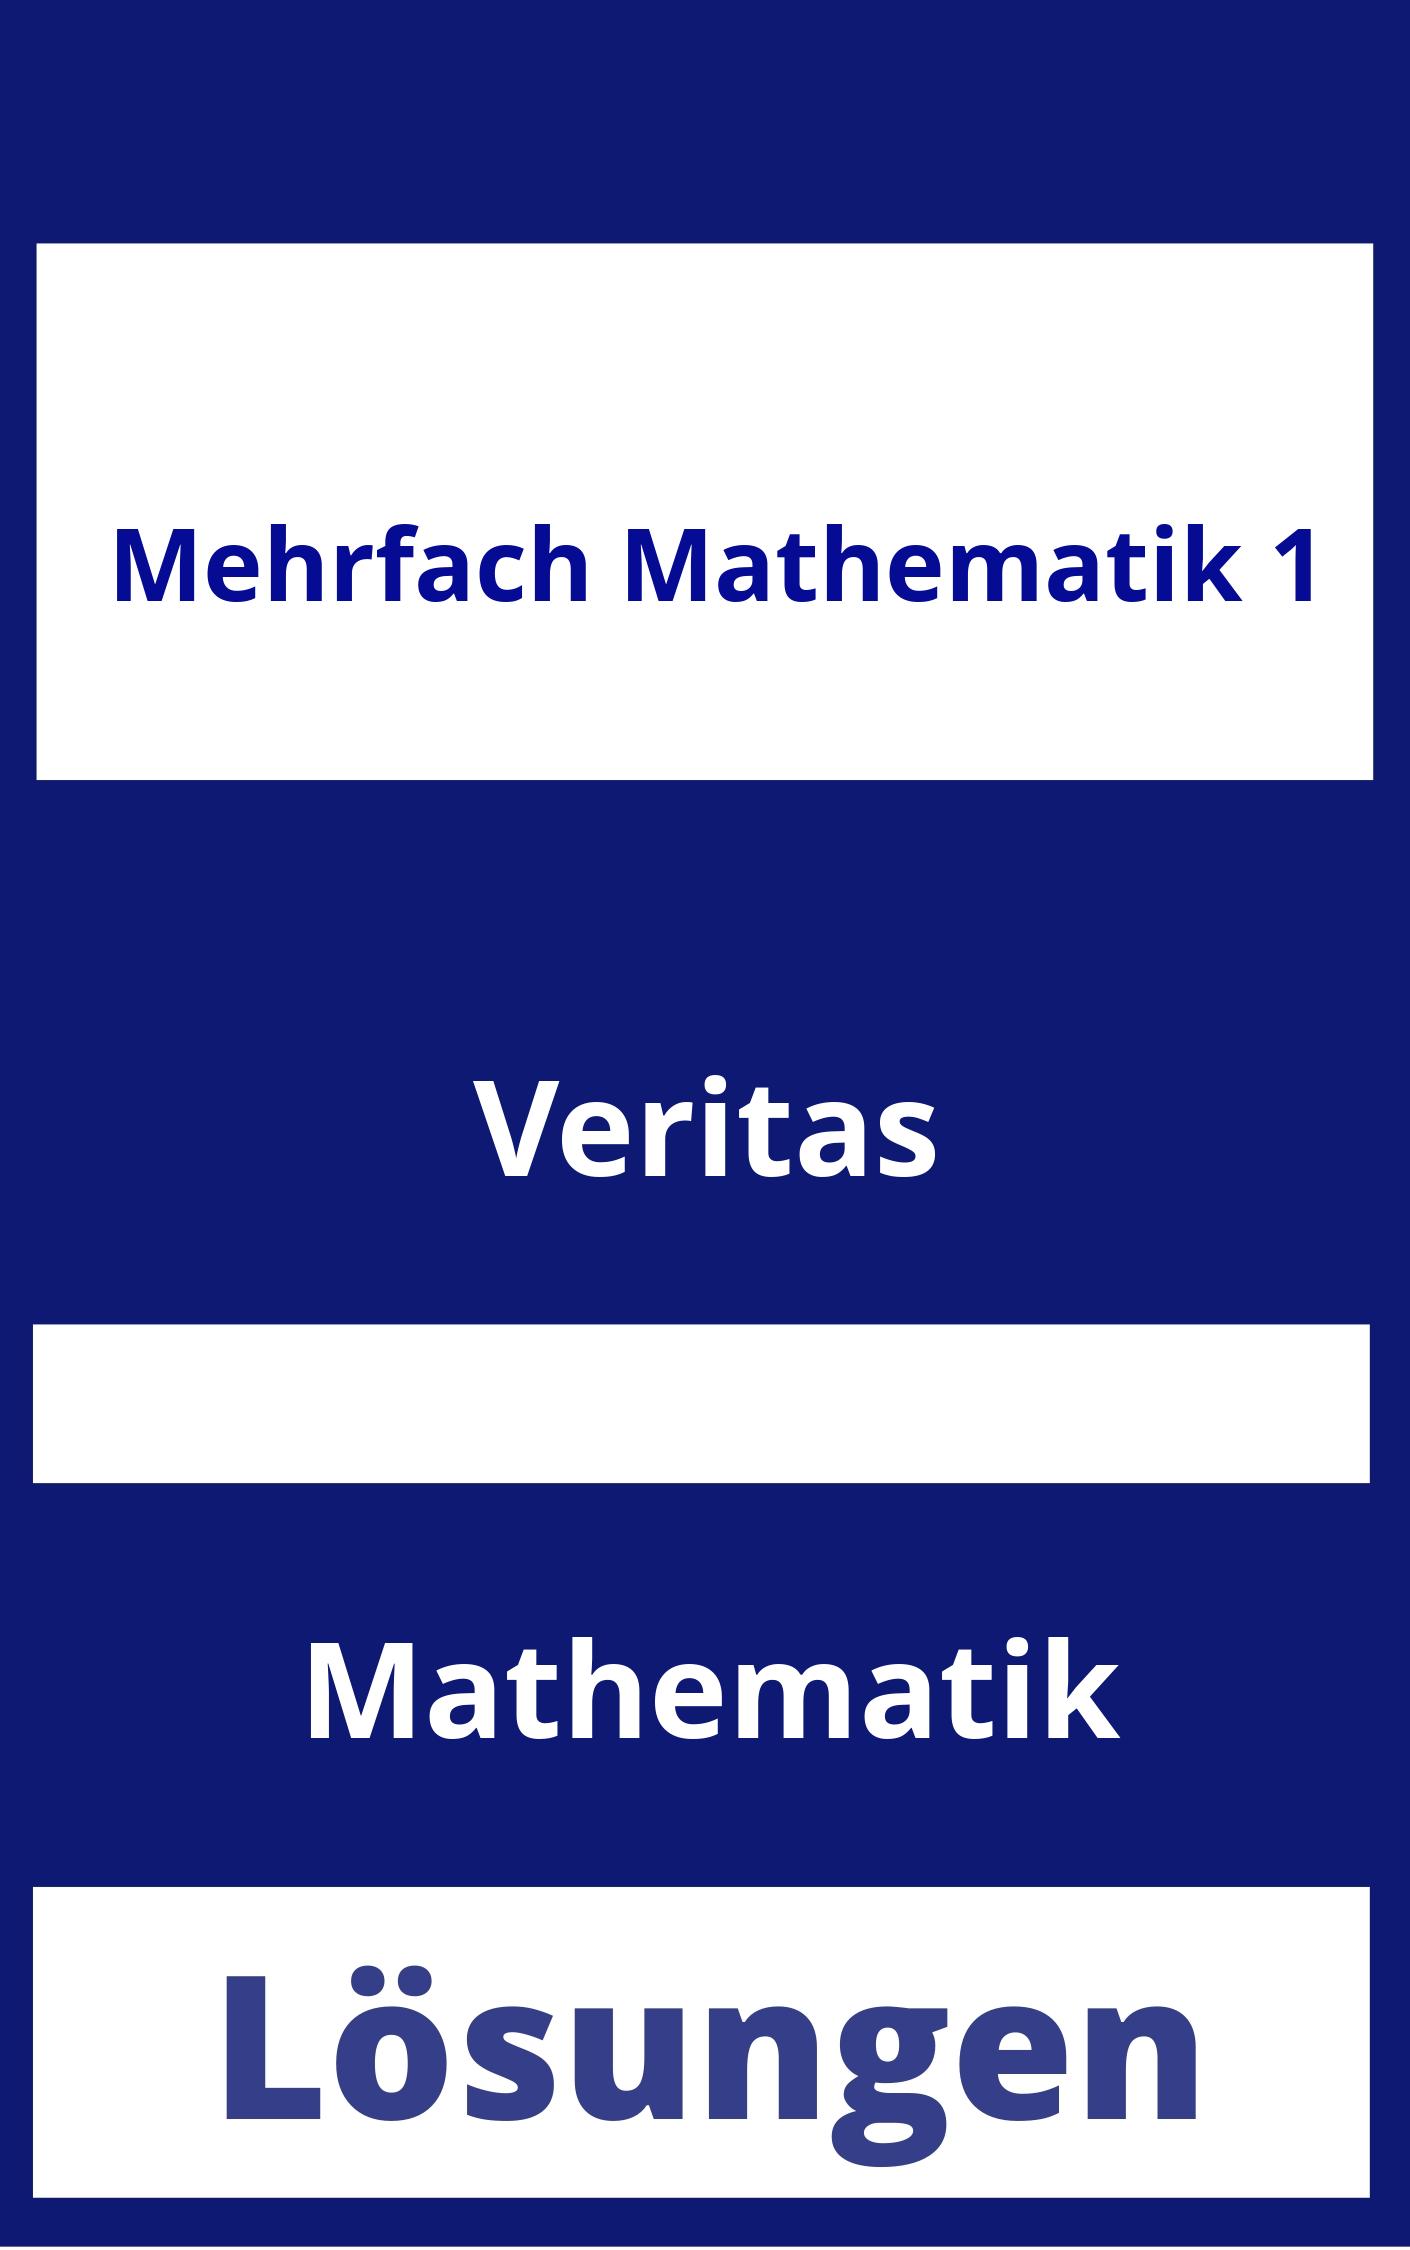 MEHRfach Mathematik 1 Lösungen PDF